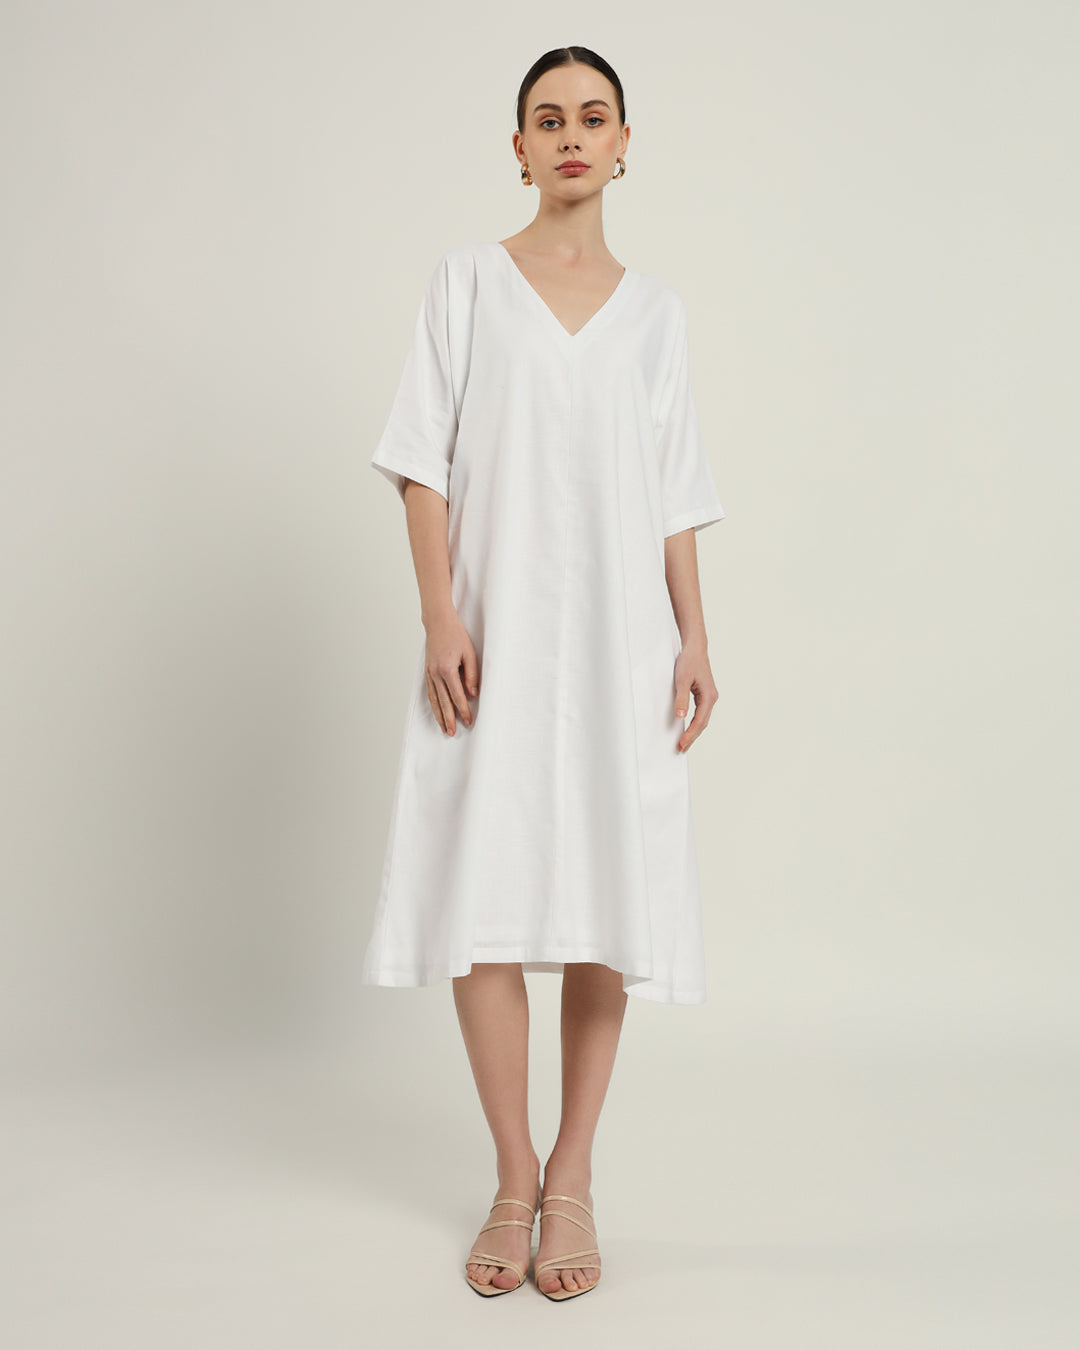 The Mildura Daisy White Linen Dress